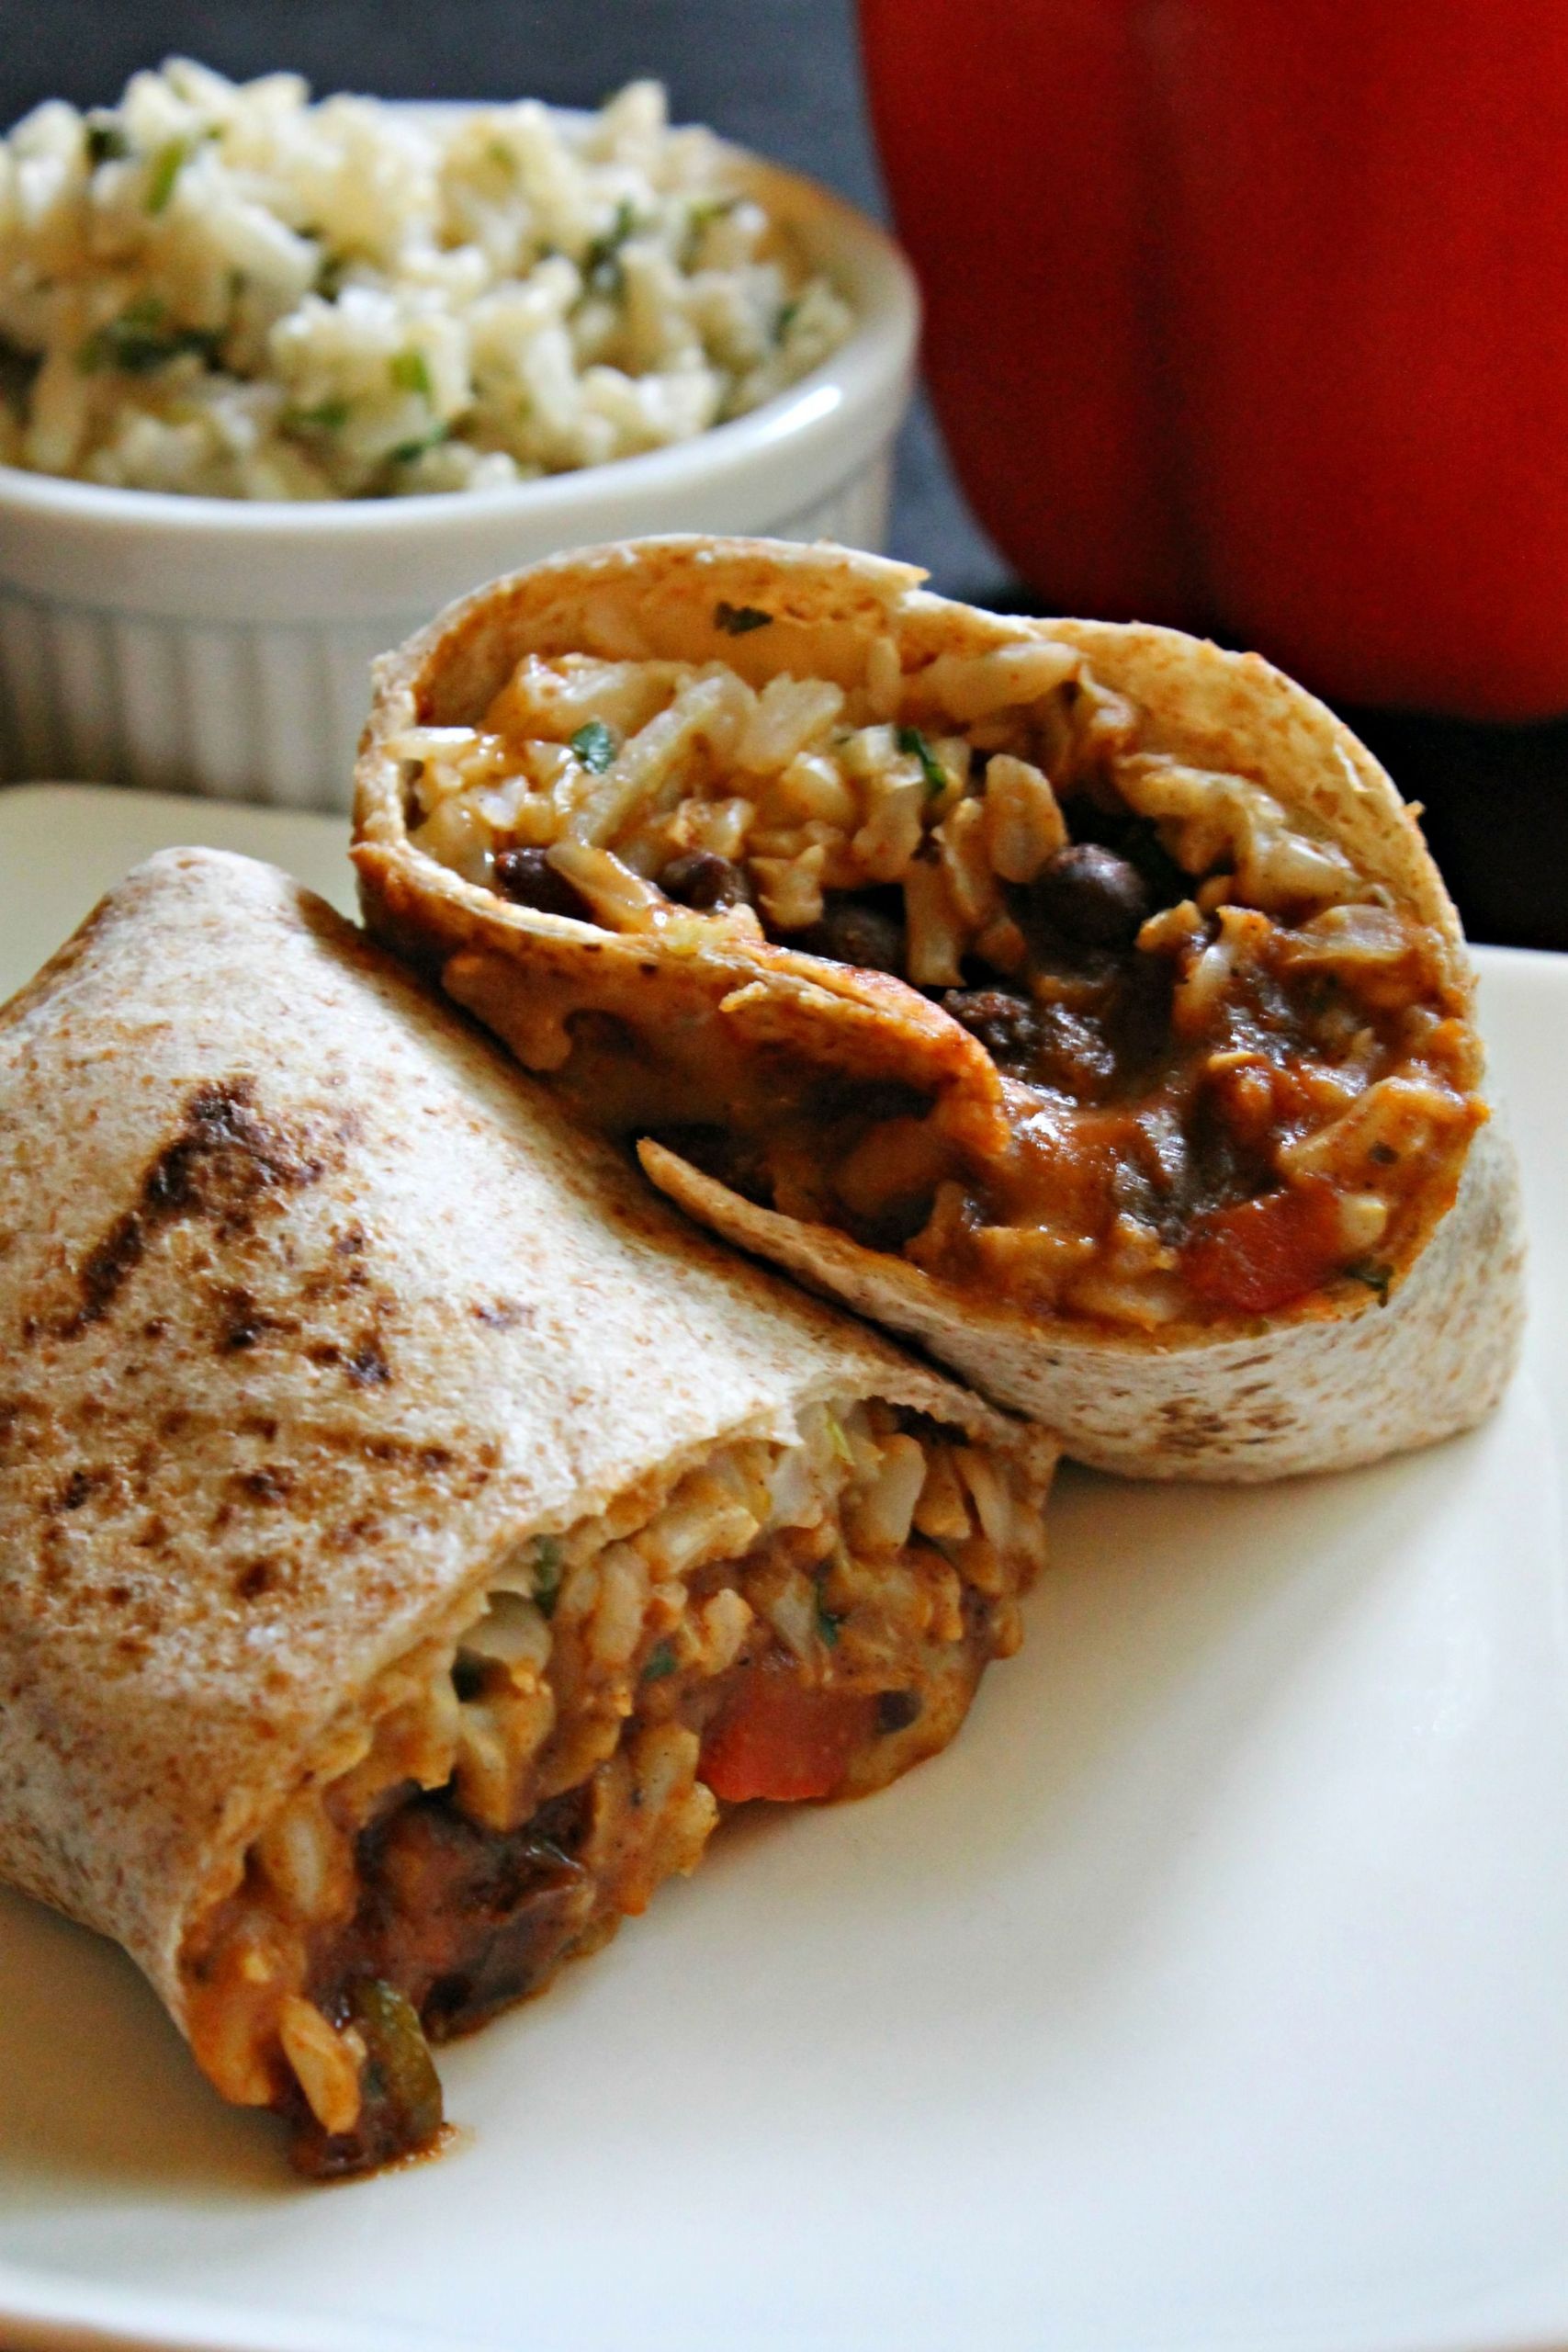 Vegetarian Burrito Recipes
 easy ve arian burrito recipe